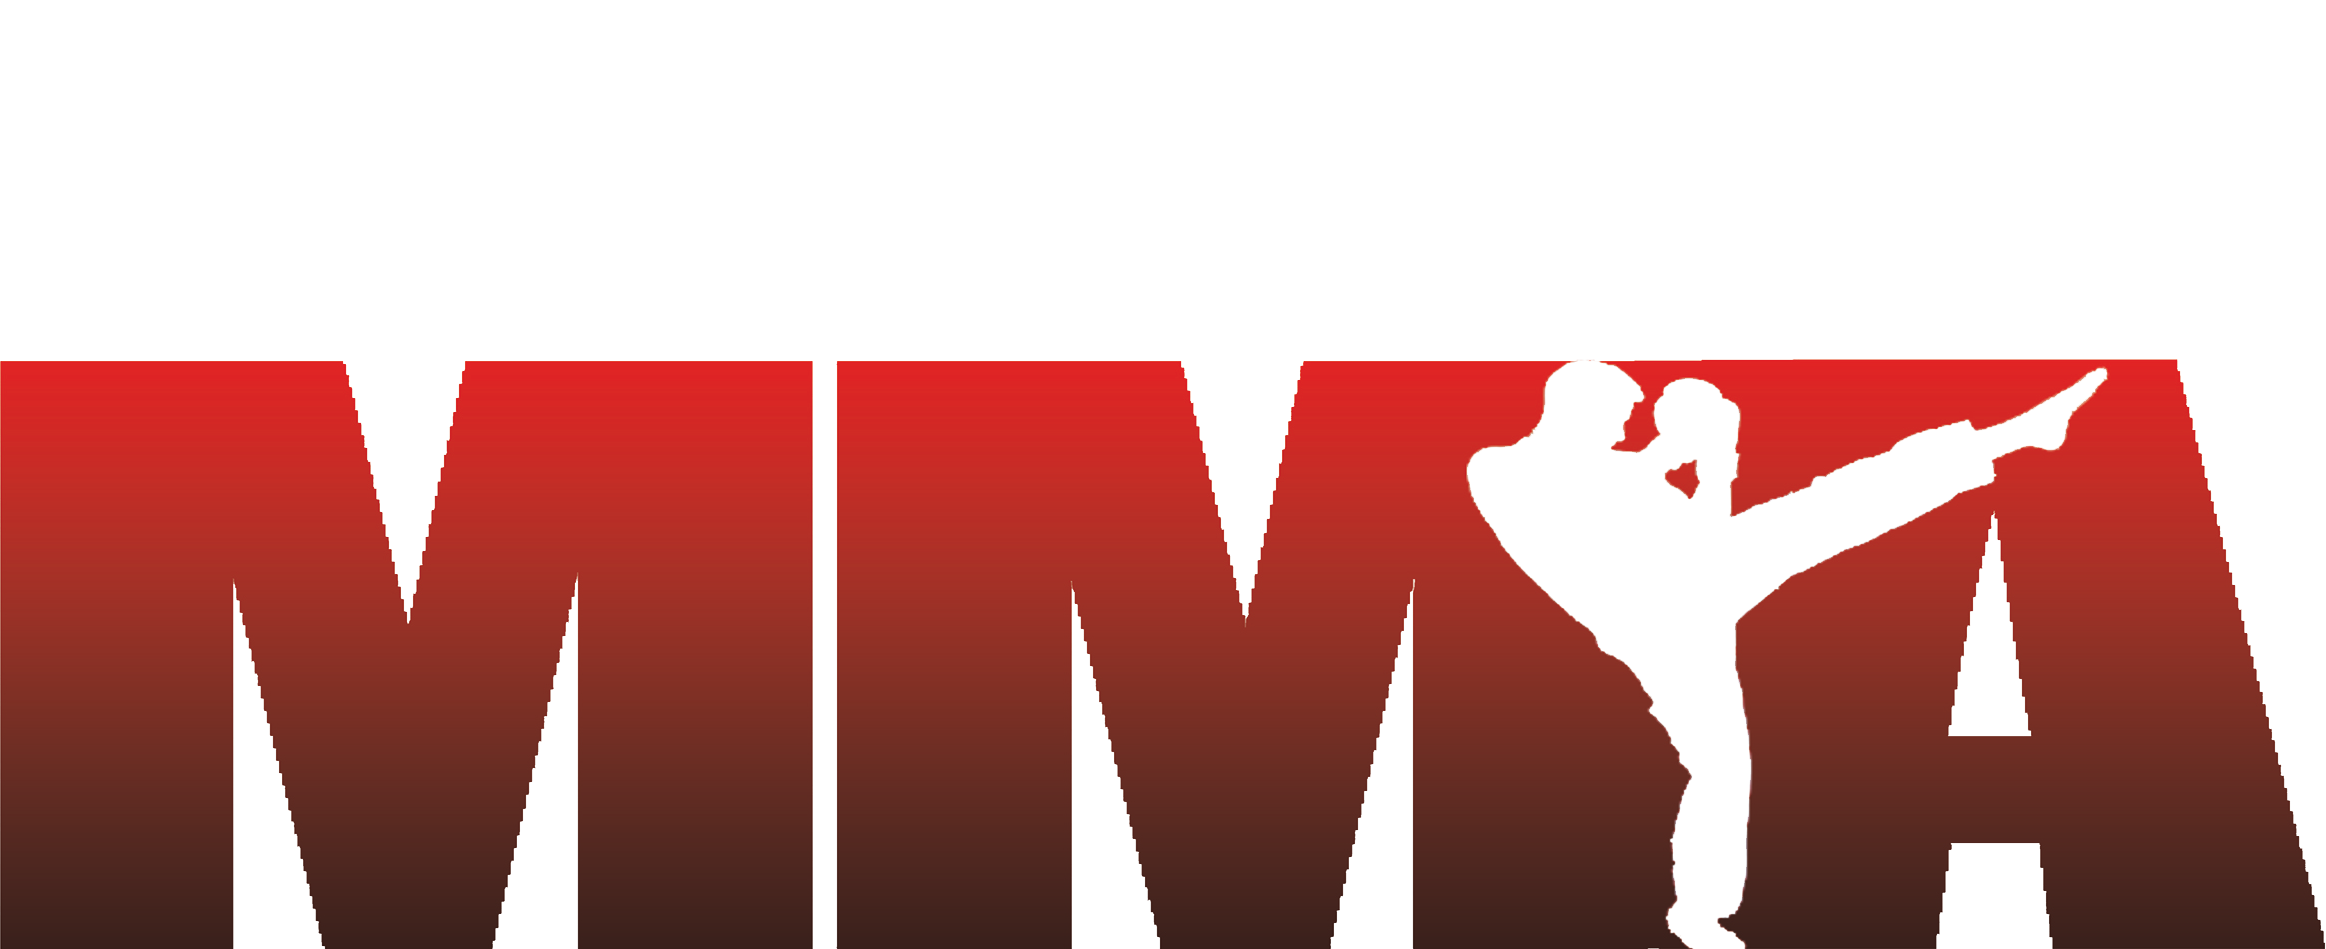 mma fighter logo